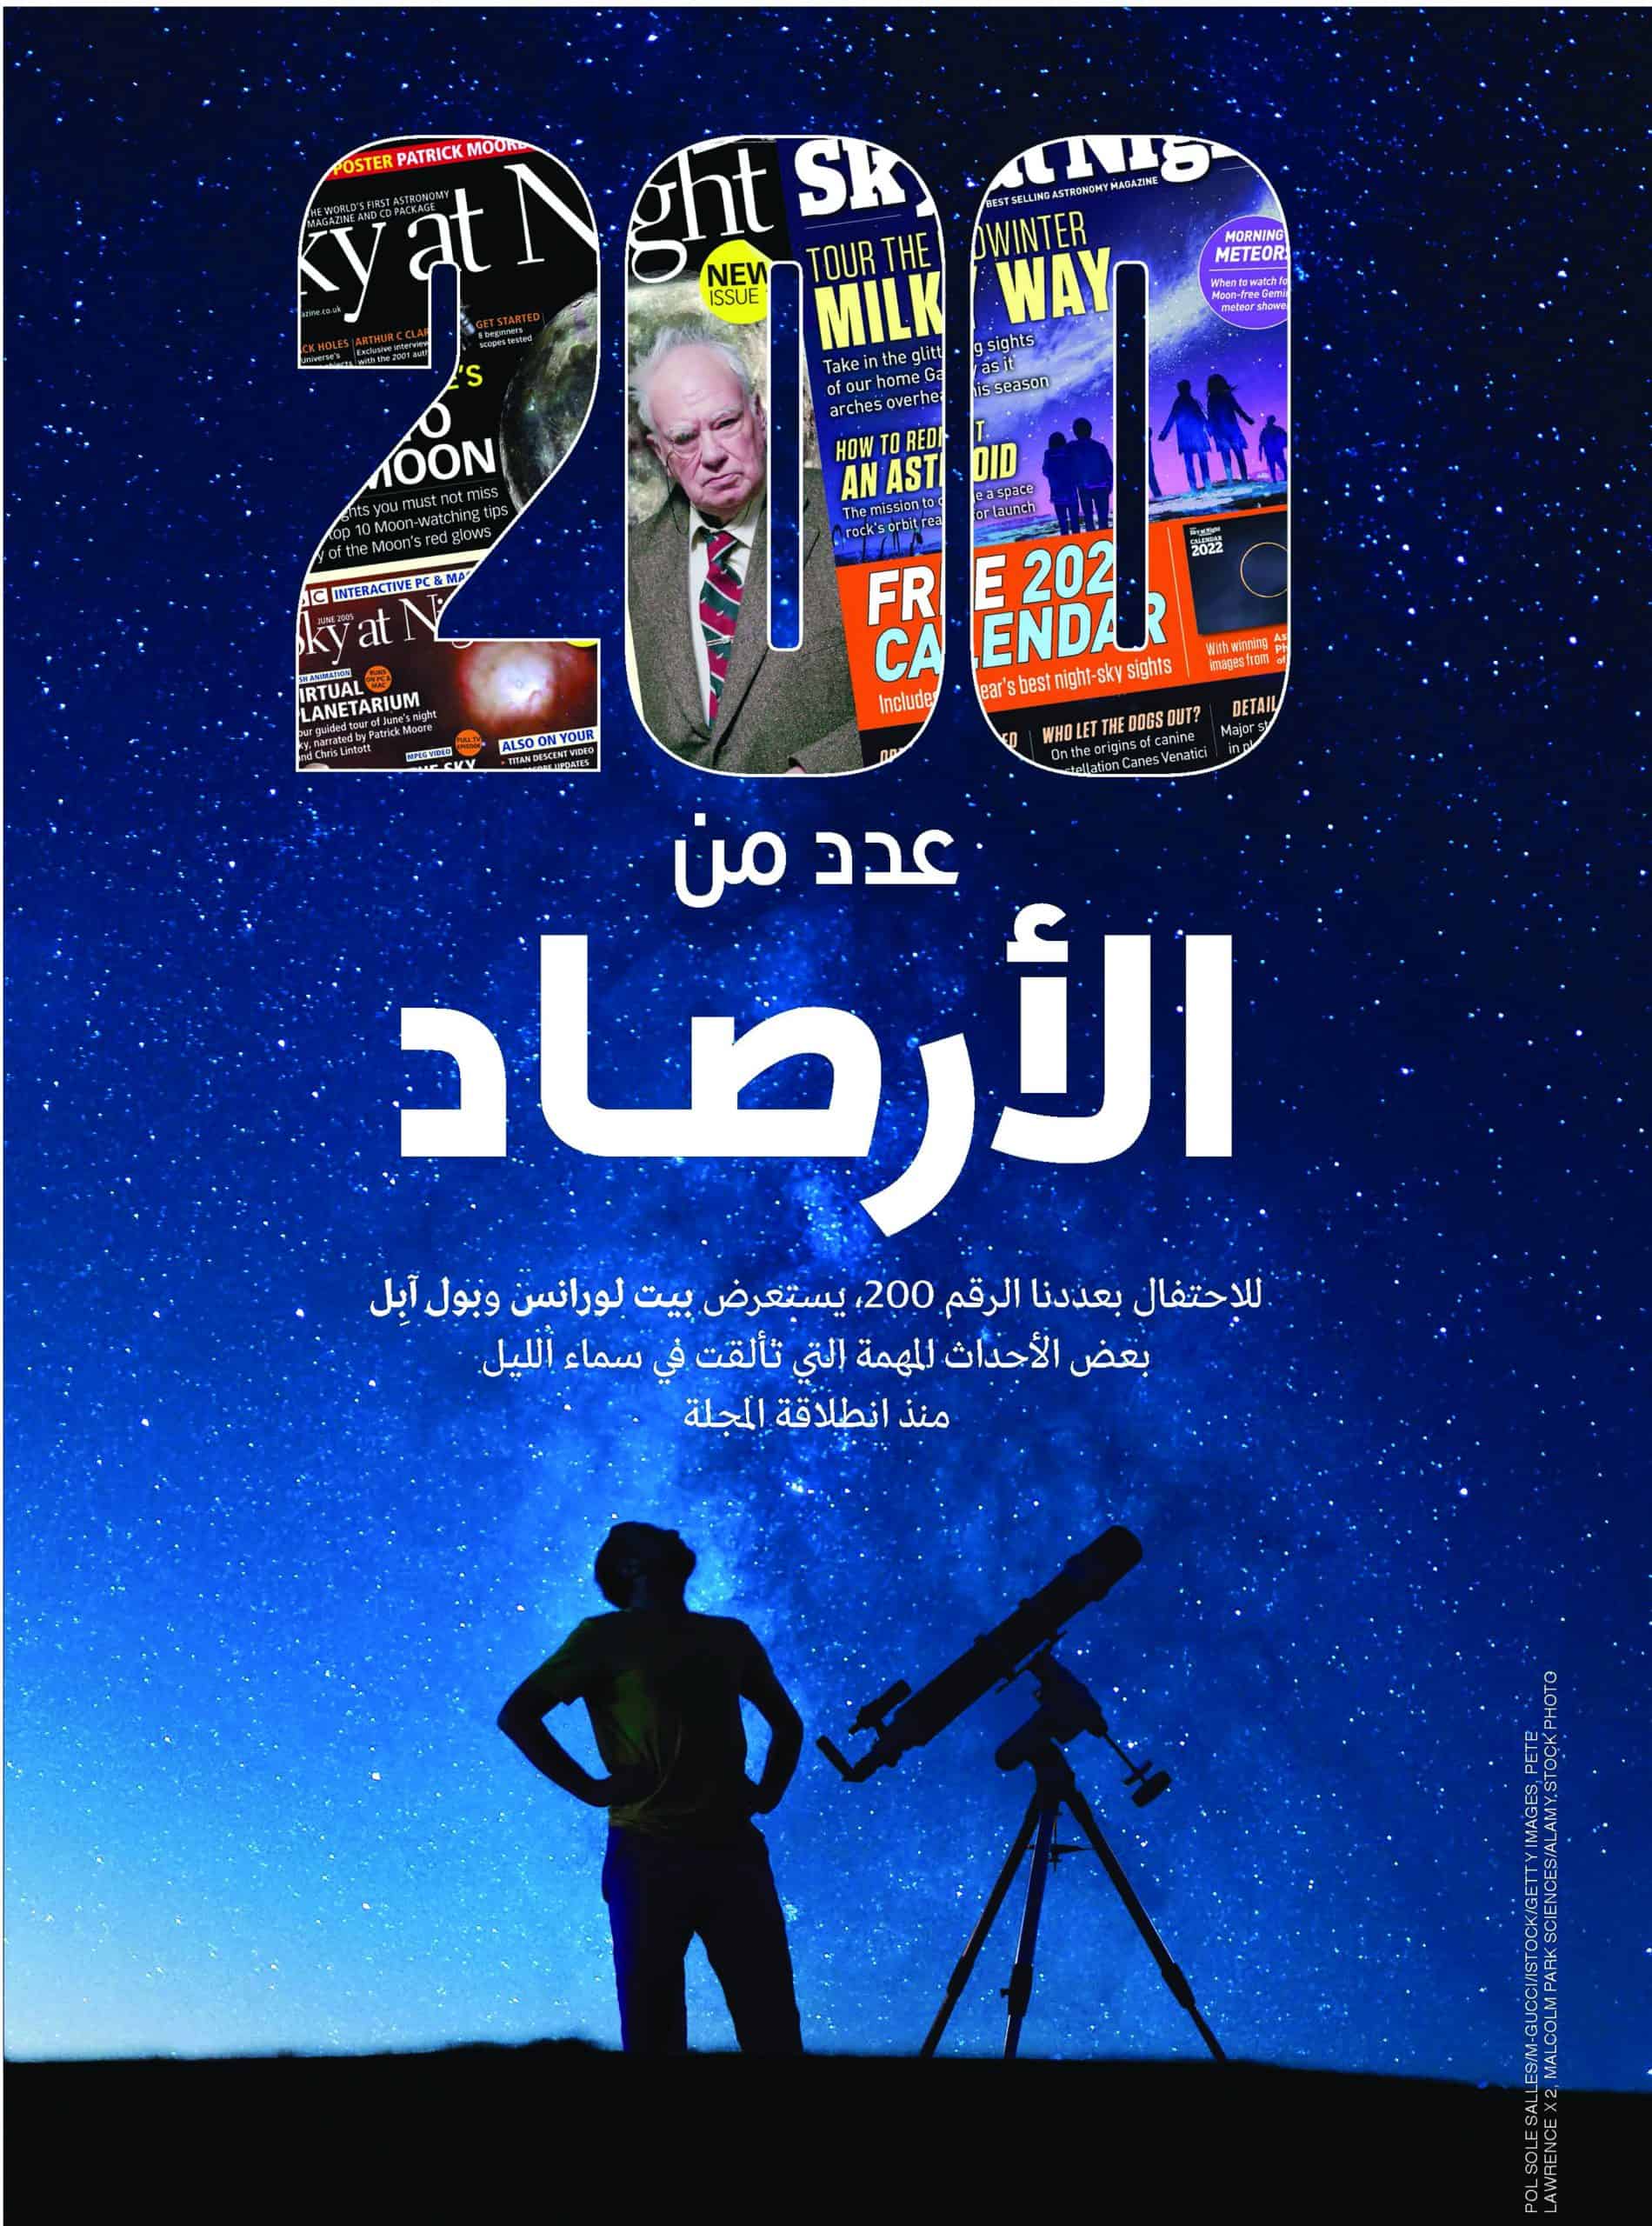 مقابلة عن علم الفلك - غلاف مجلة لرجل يقف بقرب تيليسكوب وينظر إلى السماء